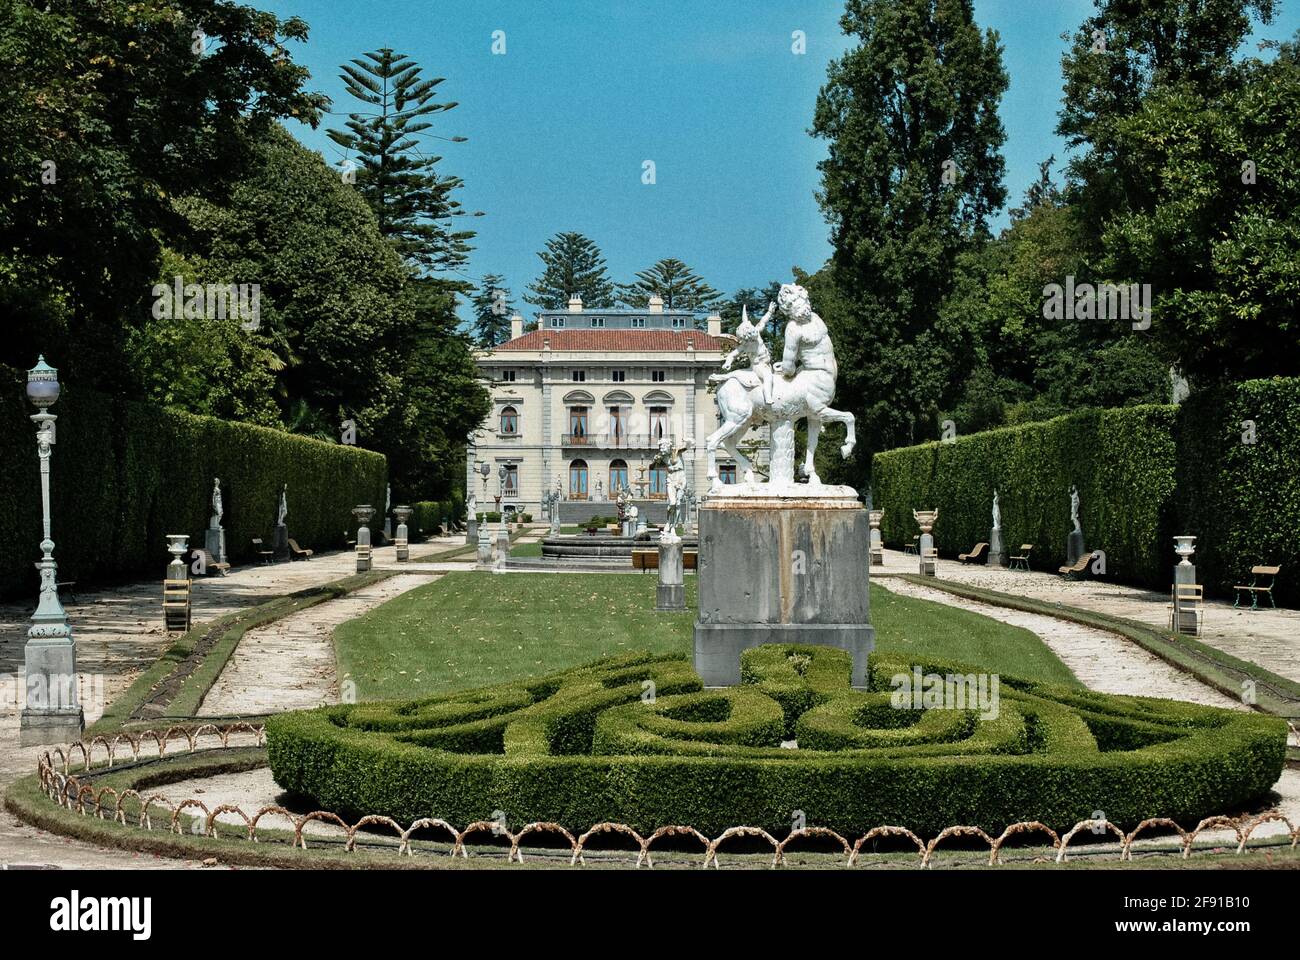 CUDILLERO, SPAGNA - 20 settembre 2011: Splendidi giardini del palazzo di selgas Foto Stock